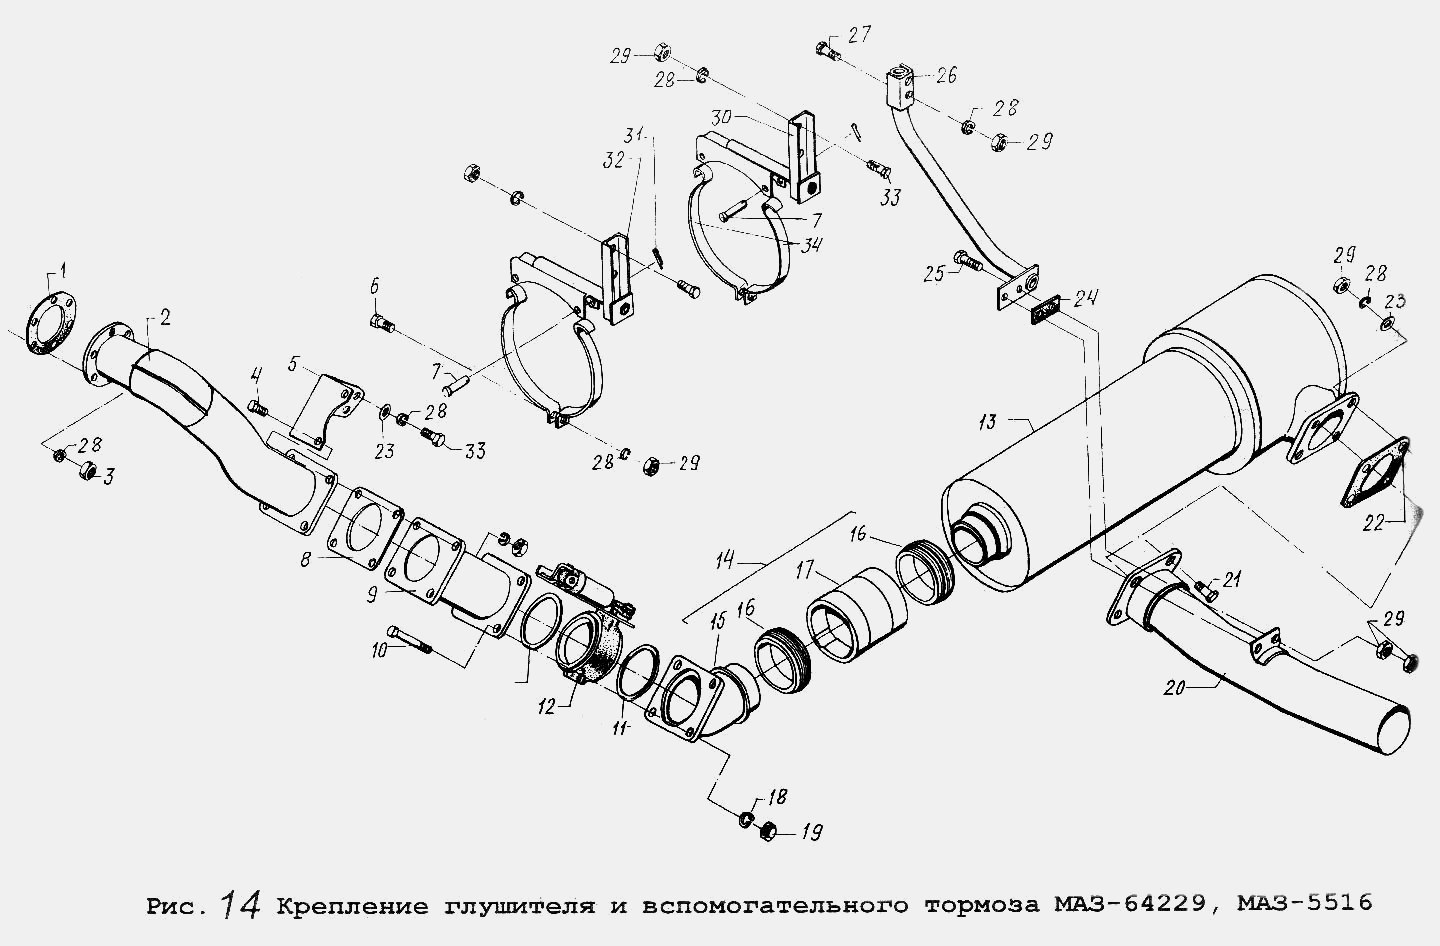 Крепление глушителя и вспомогательного тормоза МАЗ-64229, МАЗ-5516 МАЗ  64229